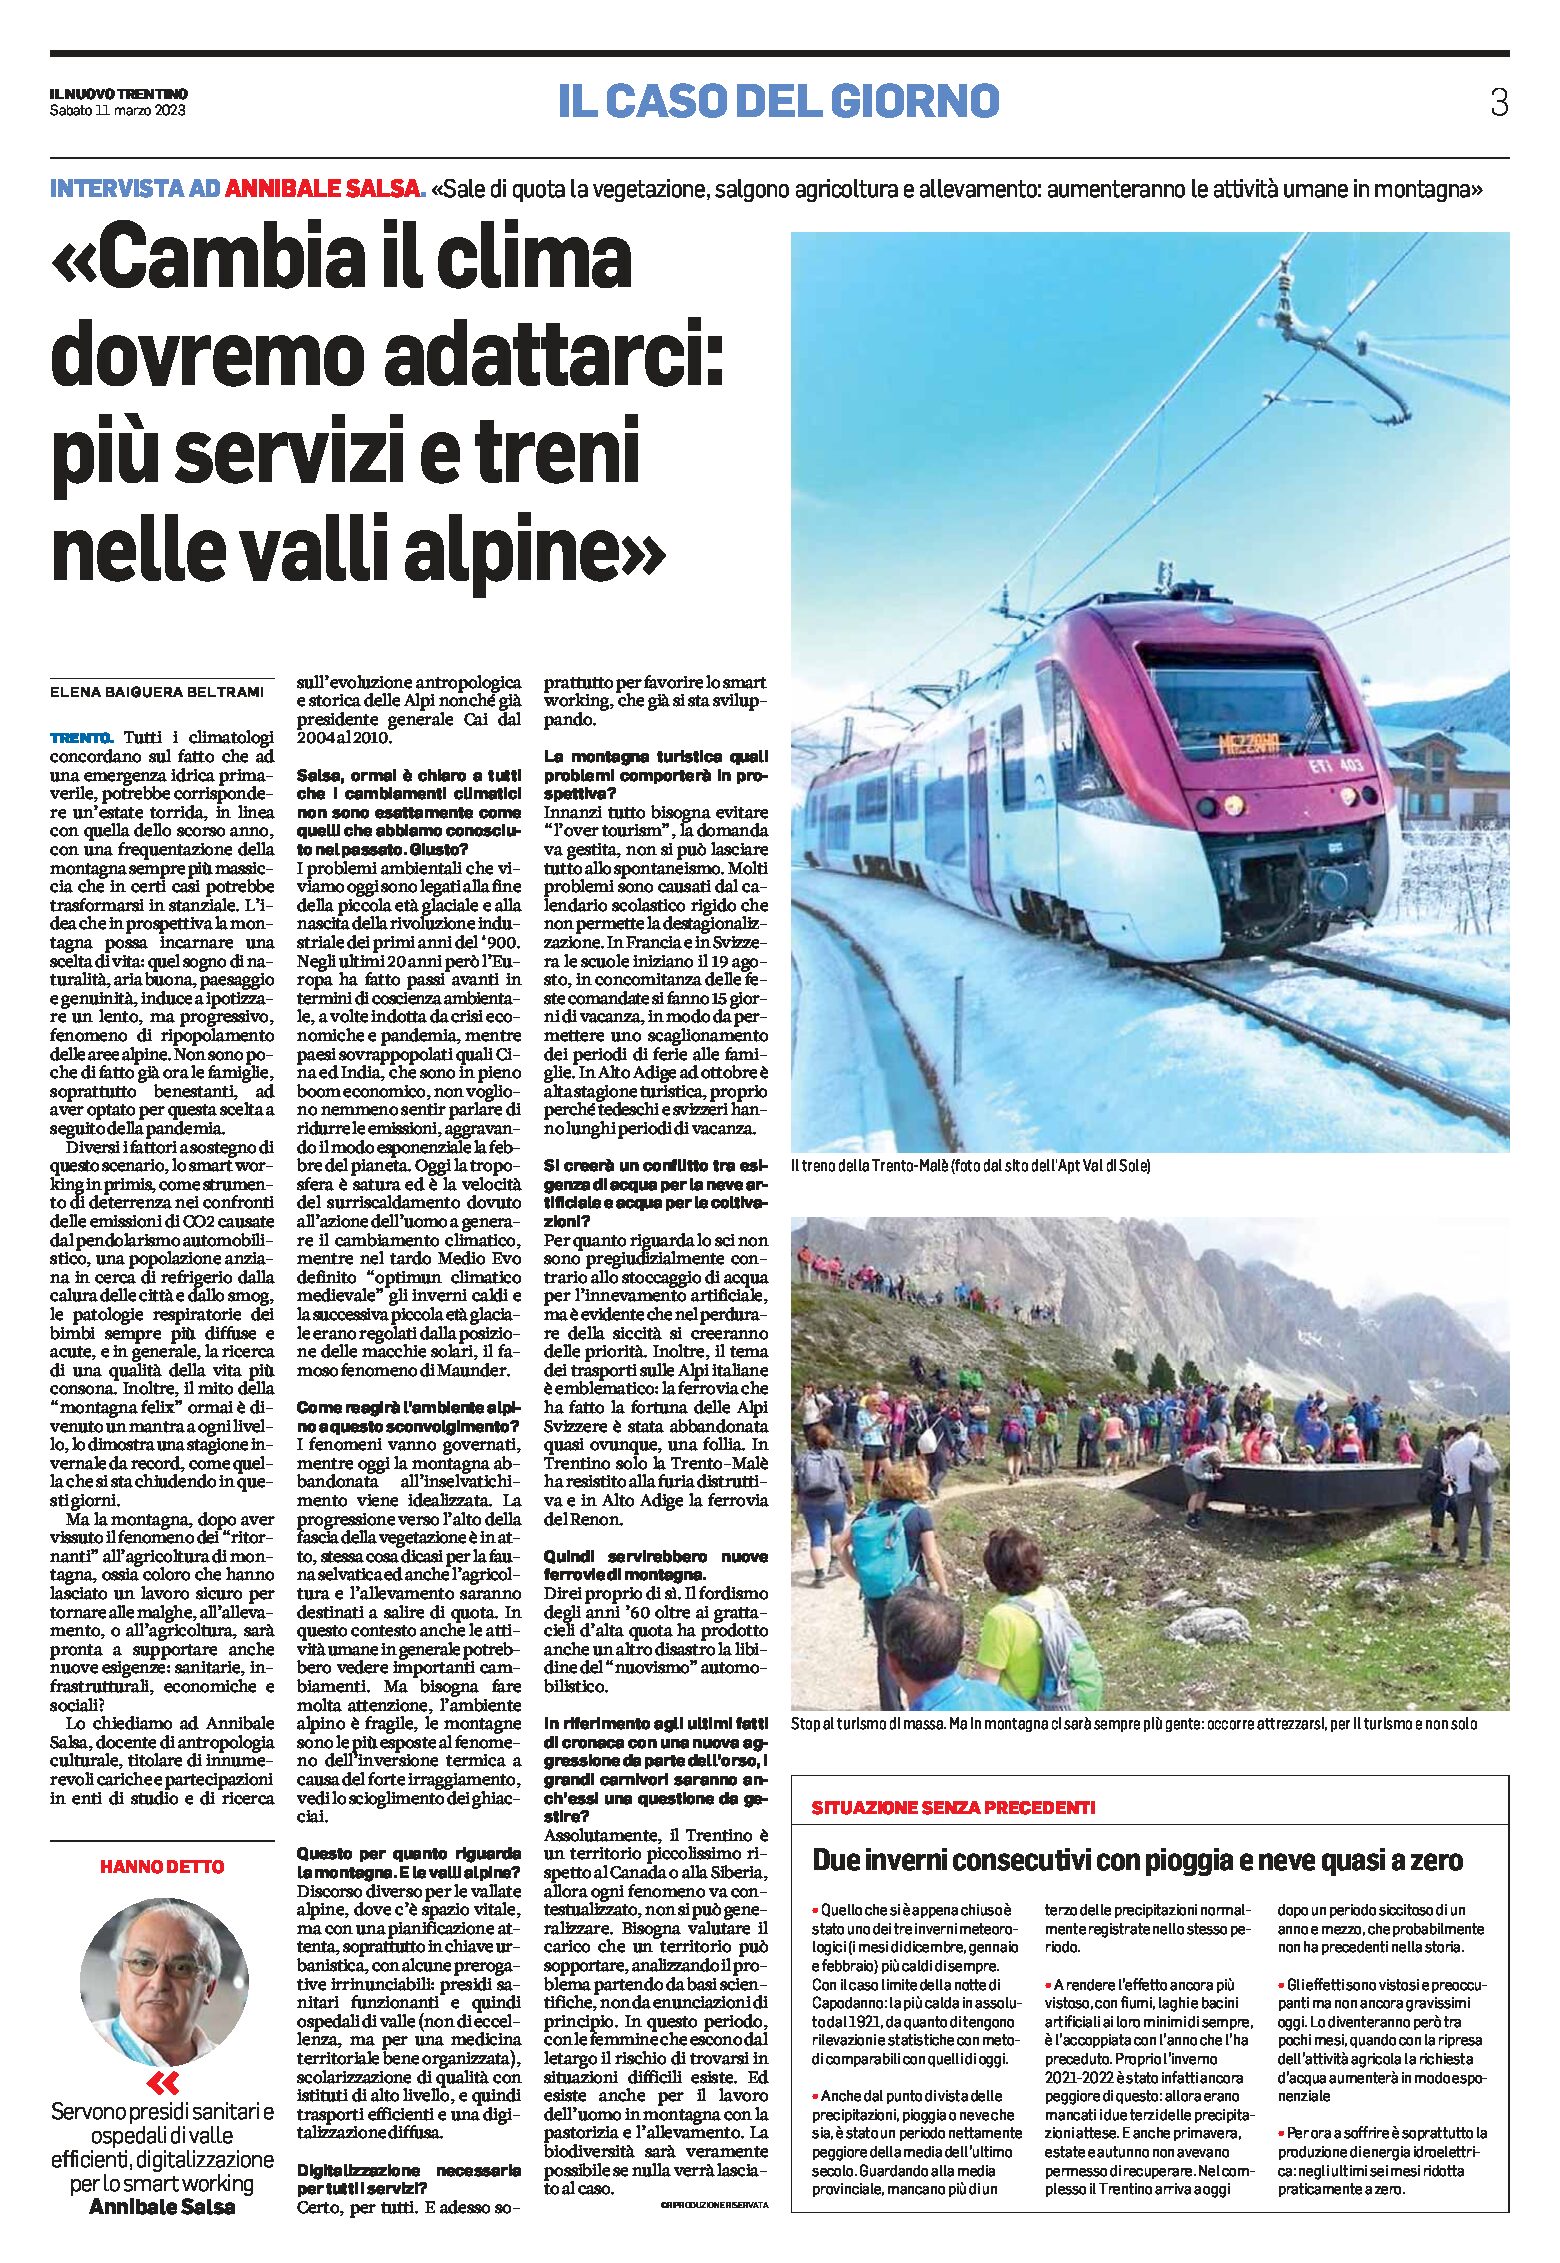 Clima: “dovremo adattarci, più servizi e treni nelle valli alpine”. Intervista ad Annibale Salsa